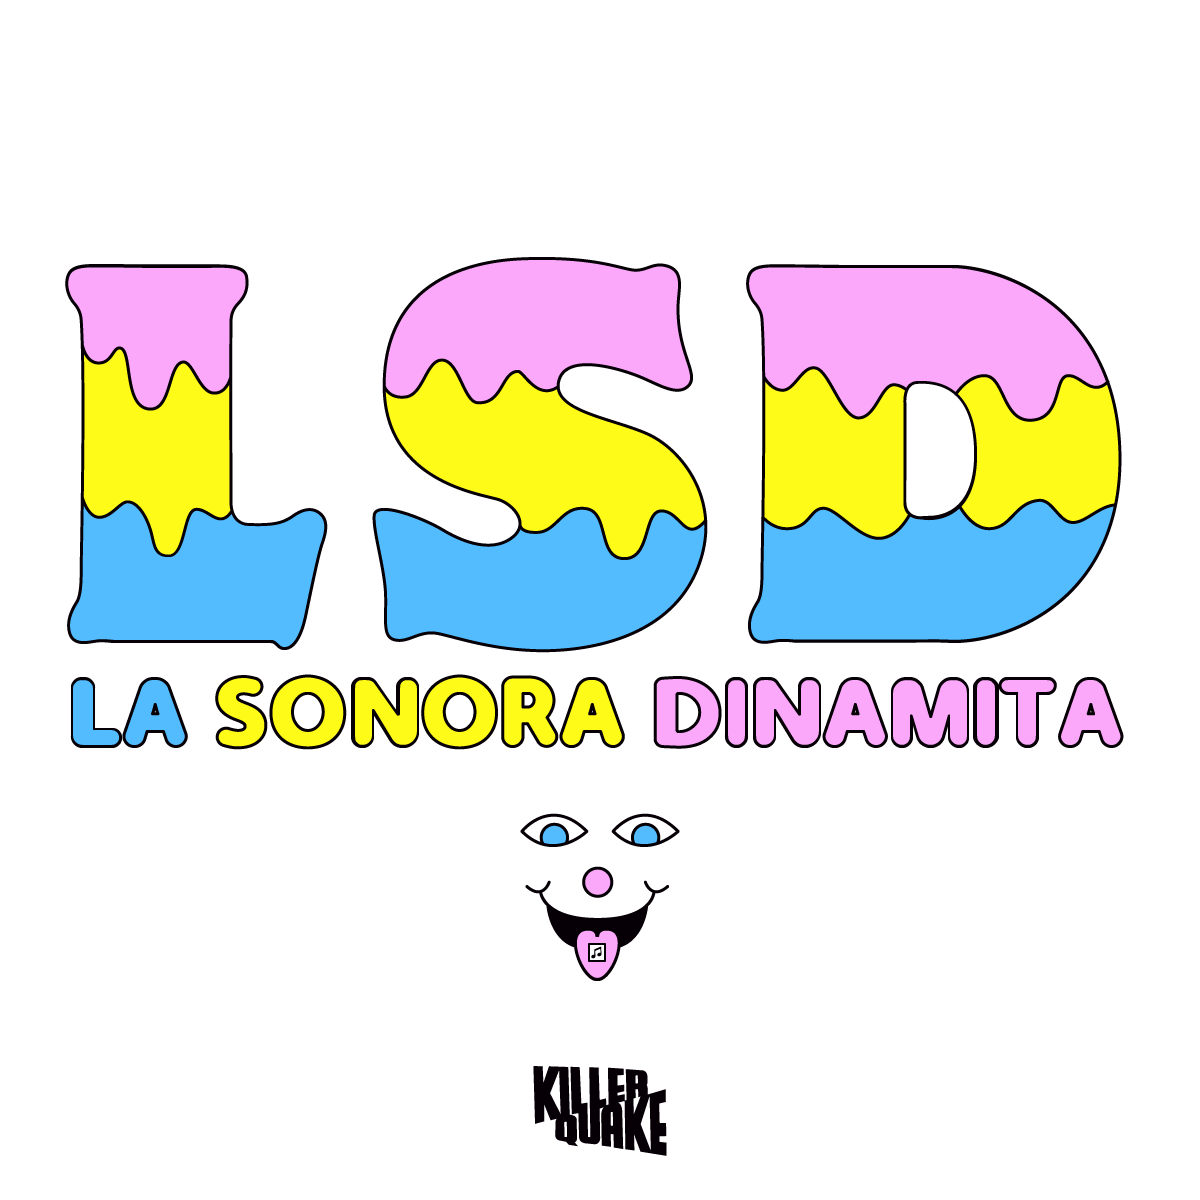 La música es mi droga 🎶

#FelizSabado #BuenFinde #México #CDMX
#febrero #amor #LSD #LaSonoraDinamita